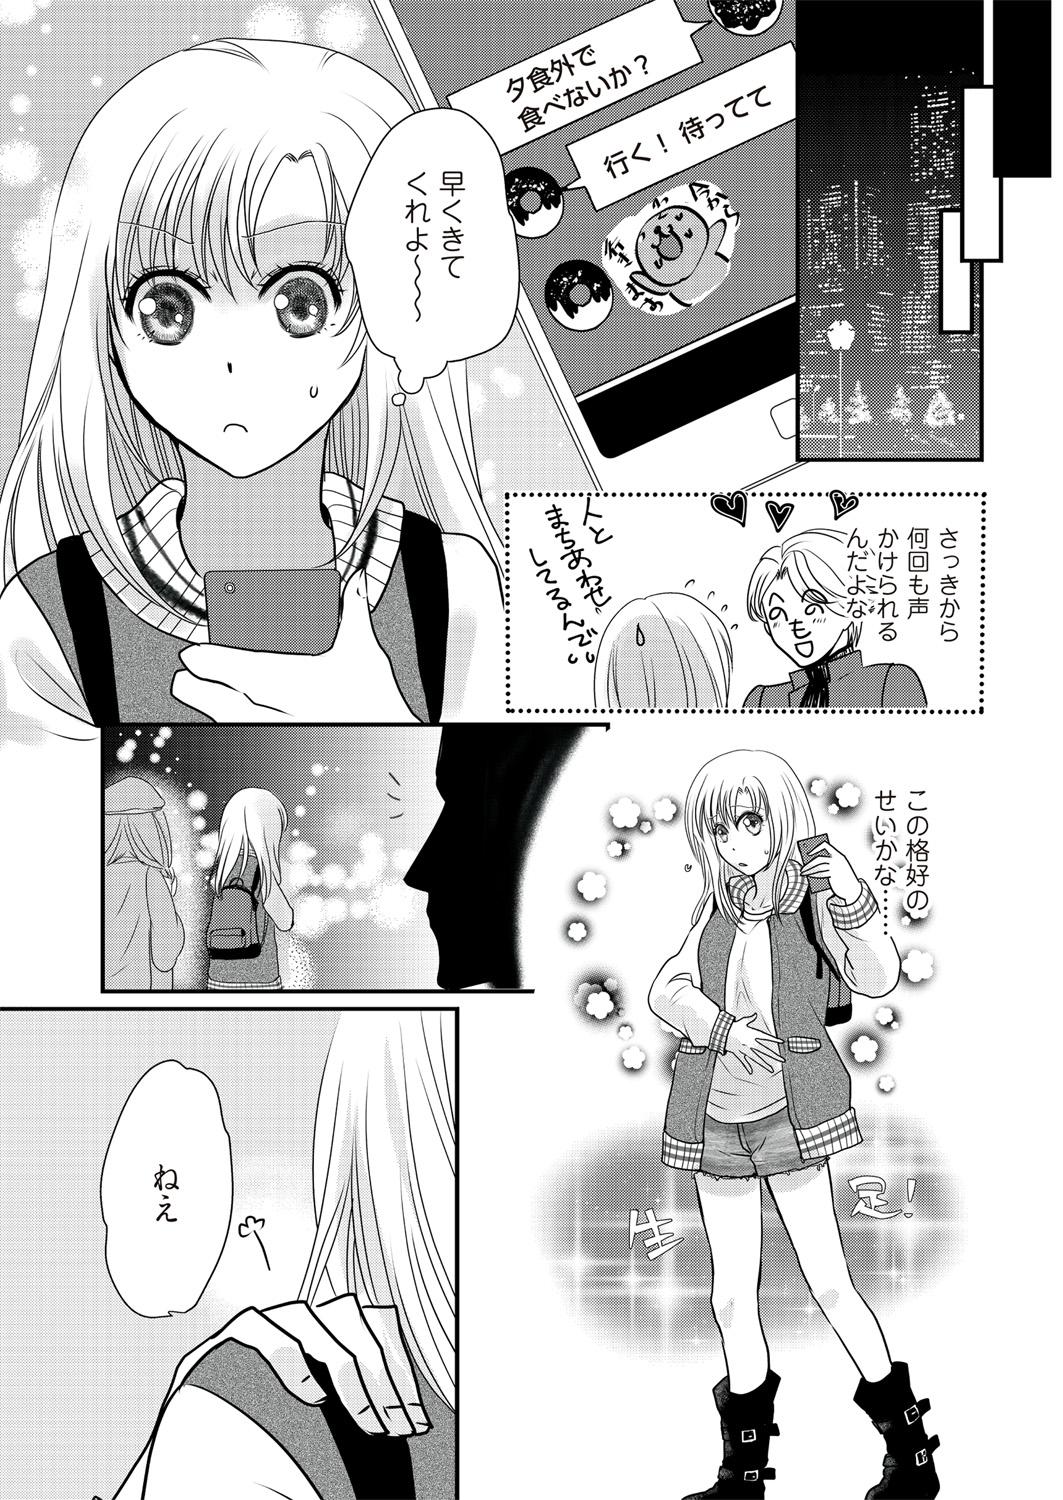 Blackmail Kaian★Trade~Onnna no ii tokoro, oshiete ageru~volume 2 Rebolando - Page 9